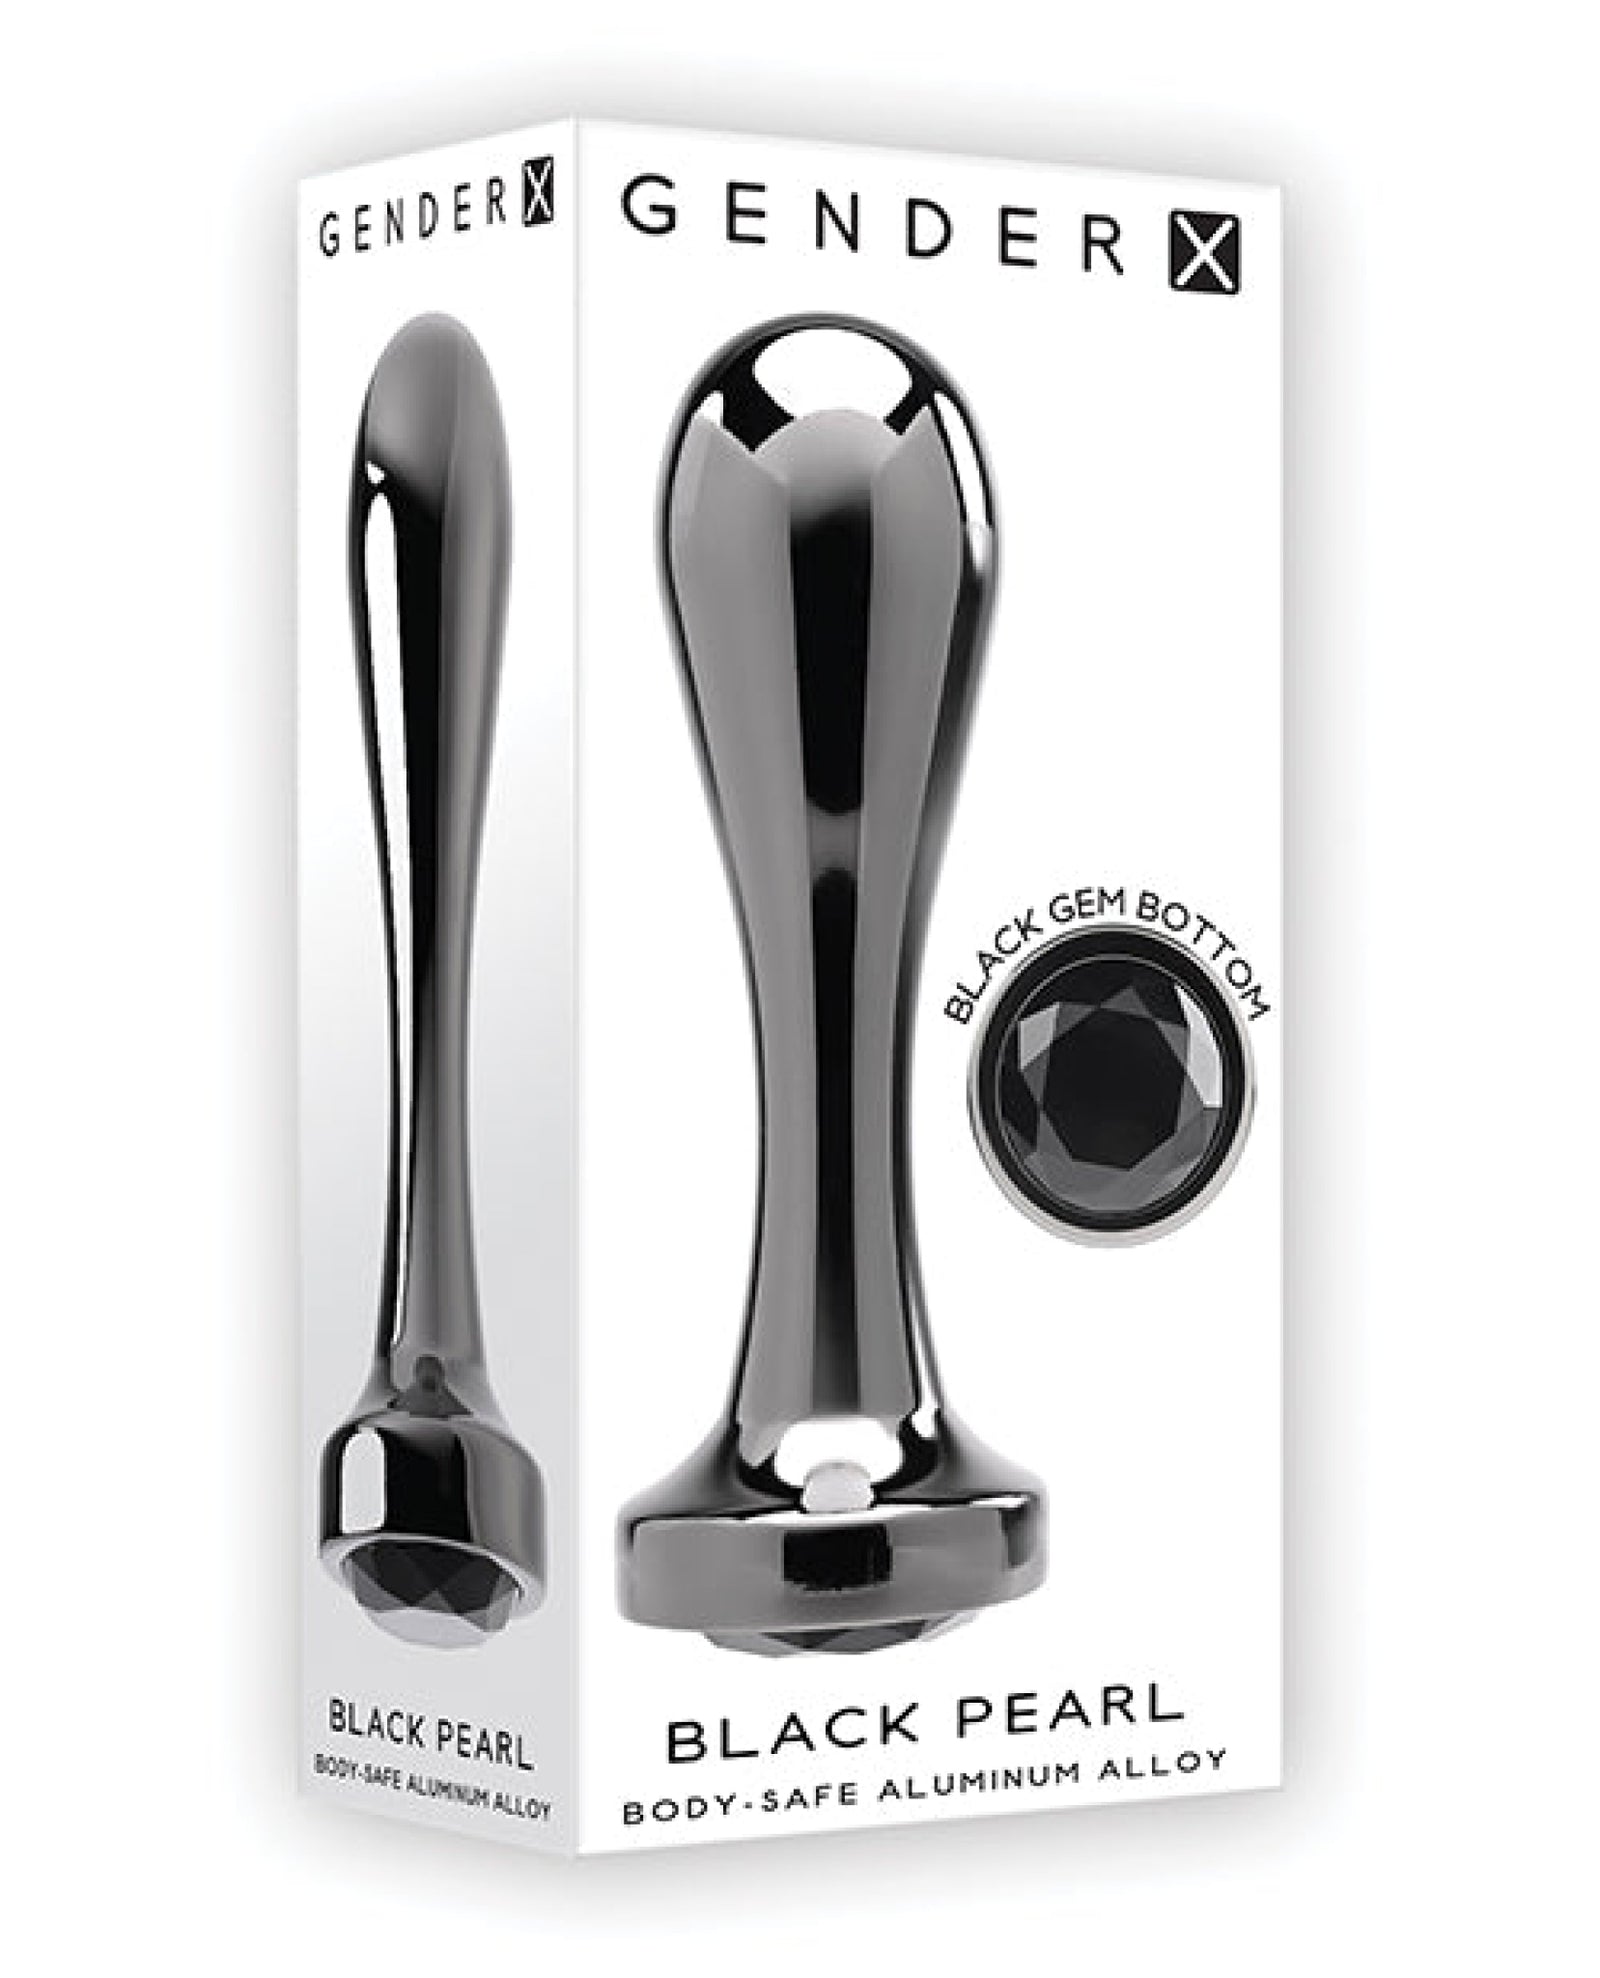 Gender X Black Pearl Plug - Black Gender X